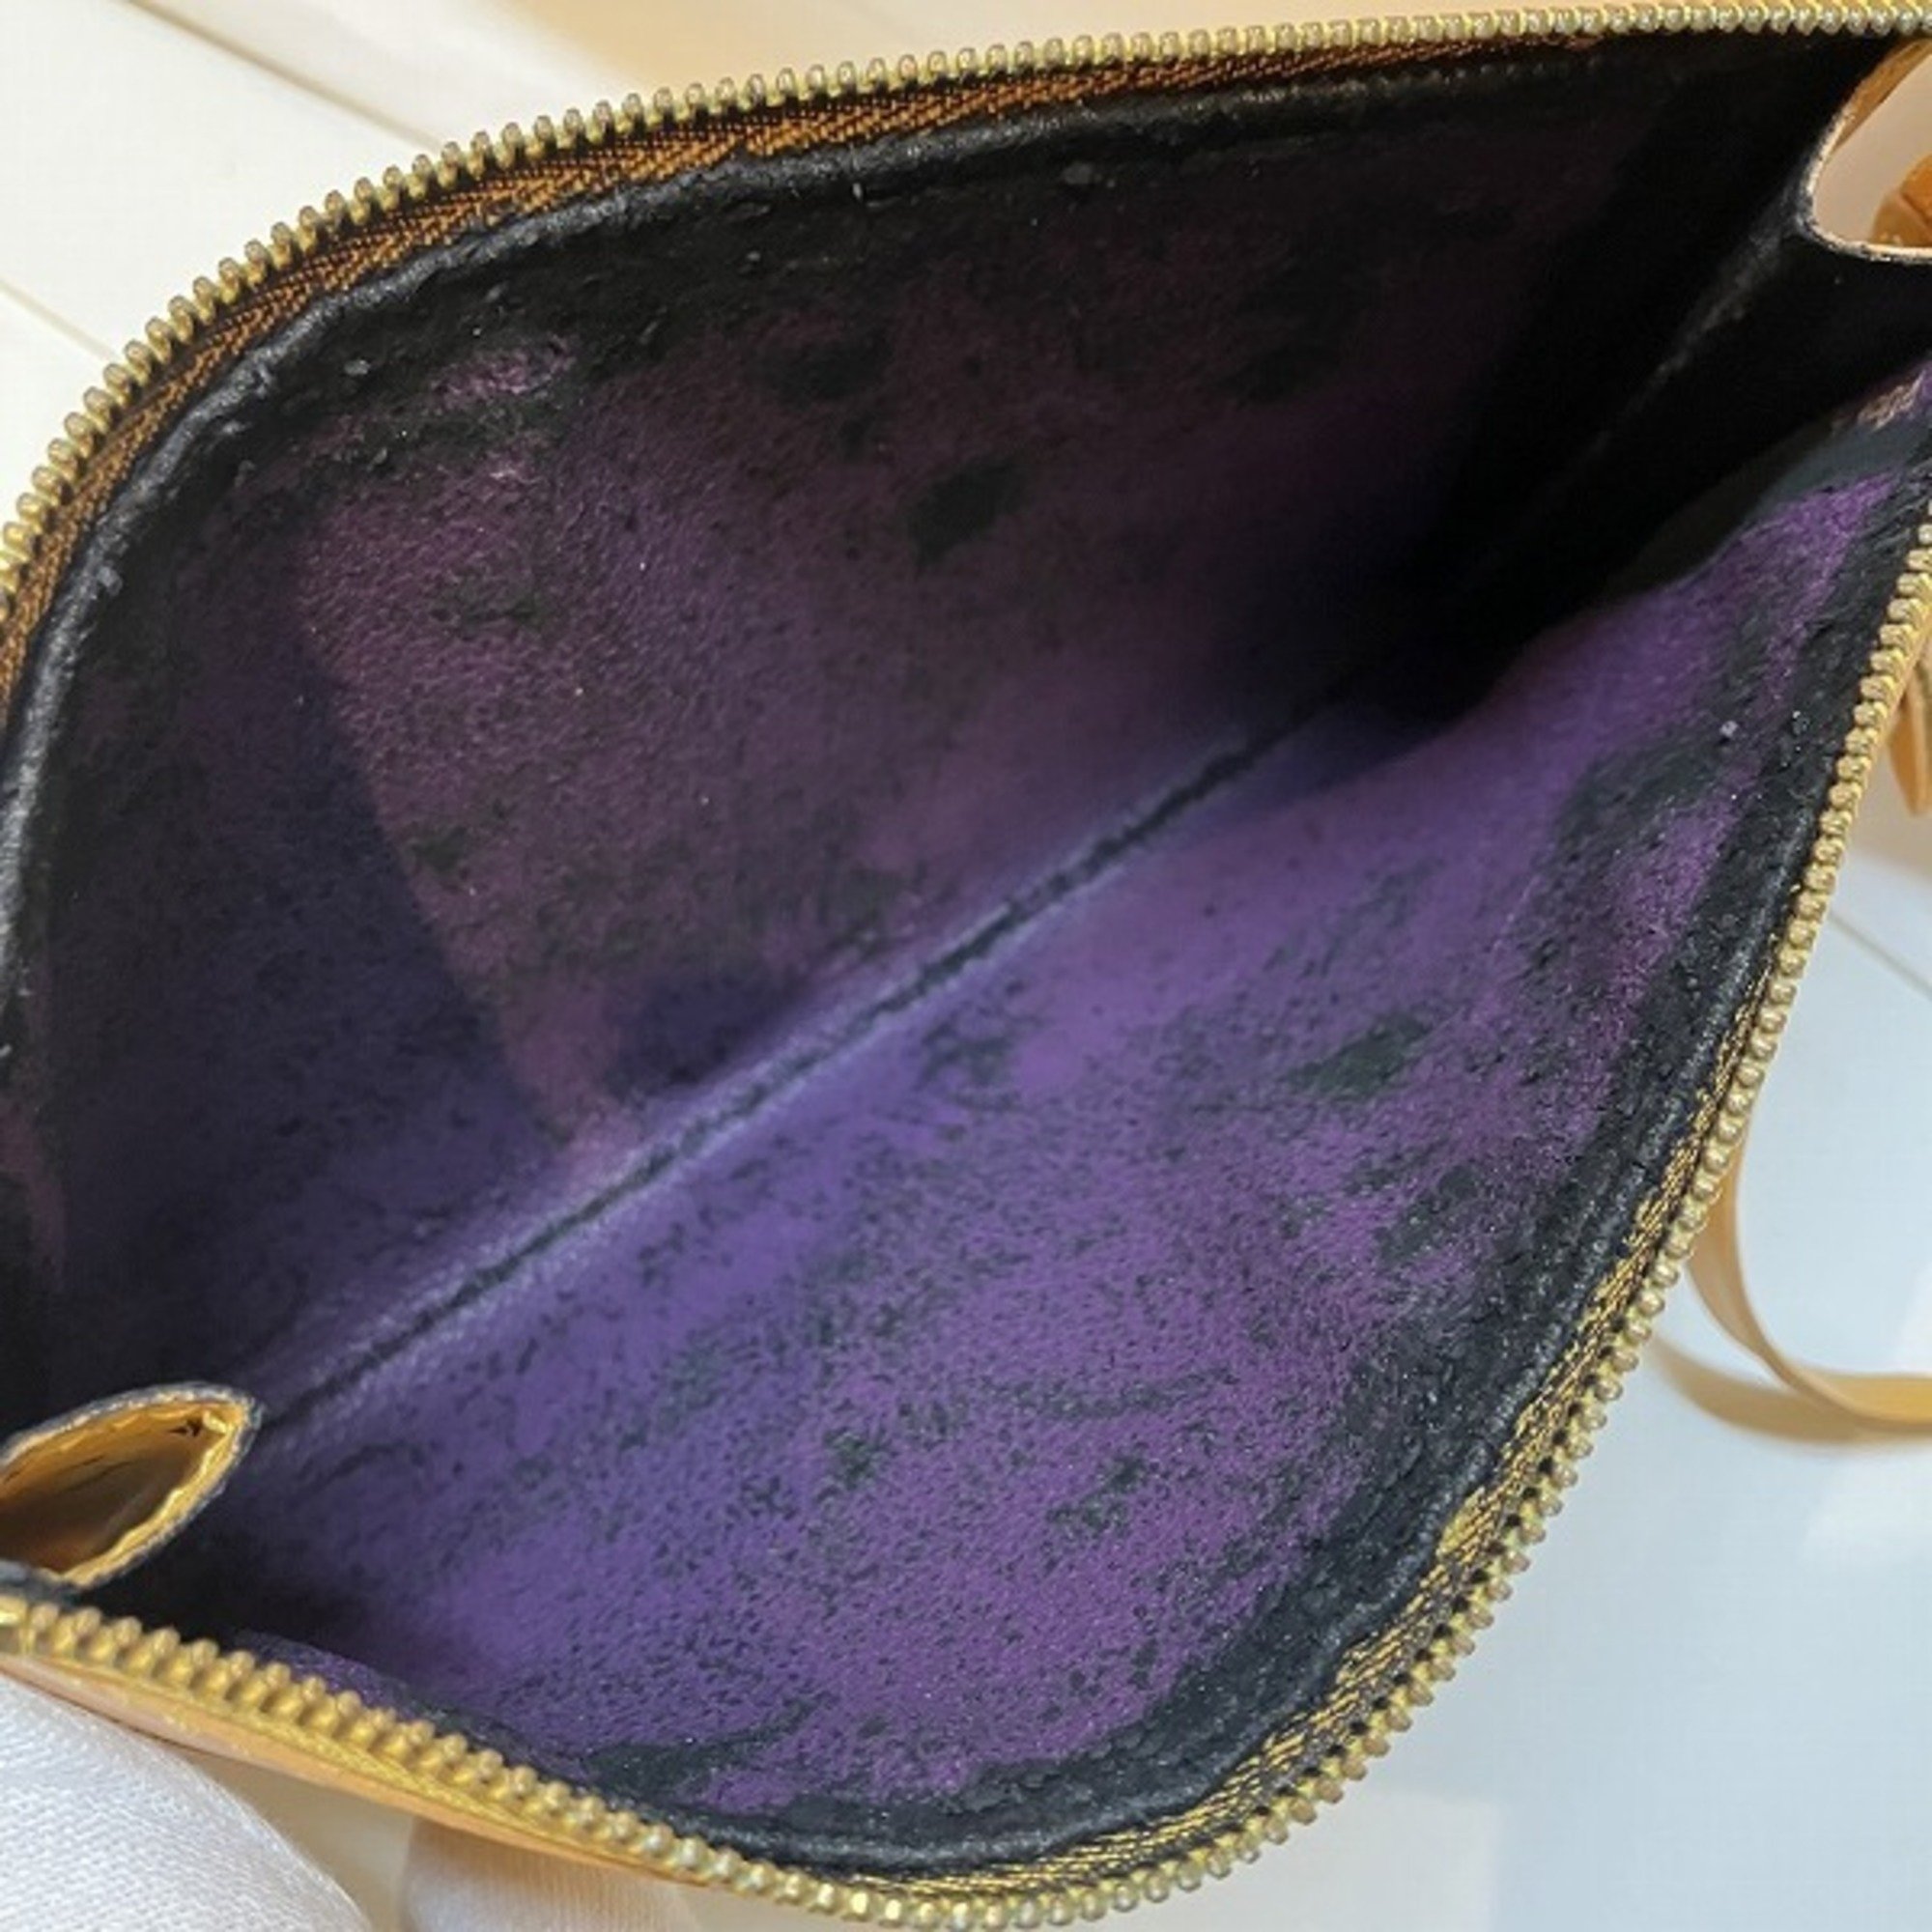 Louis Vuitton Epi Pochette Accessoire M52959 Bag Handbag Women's